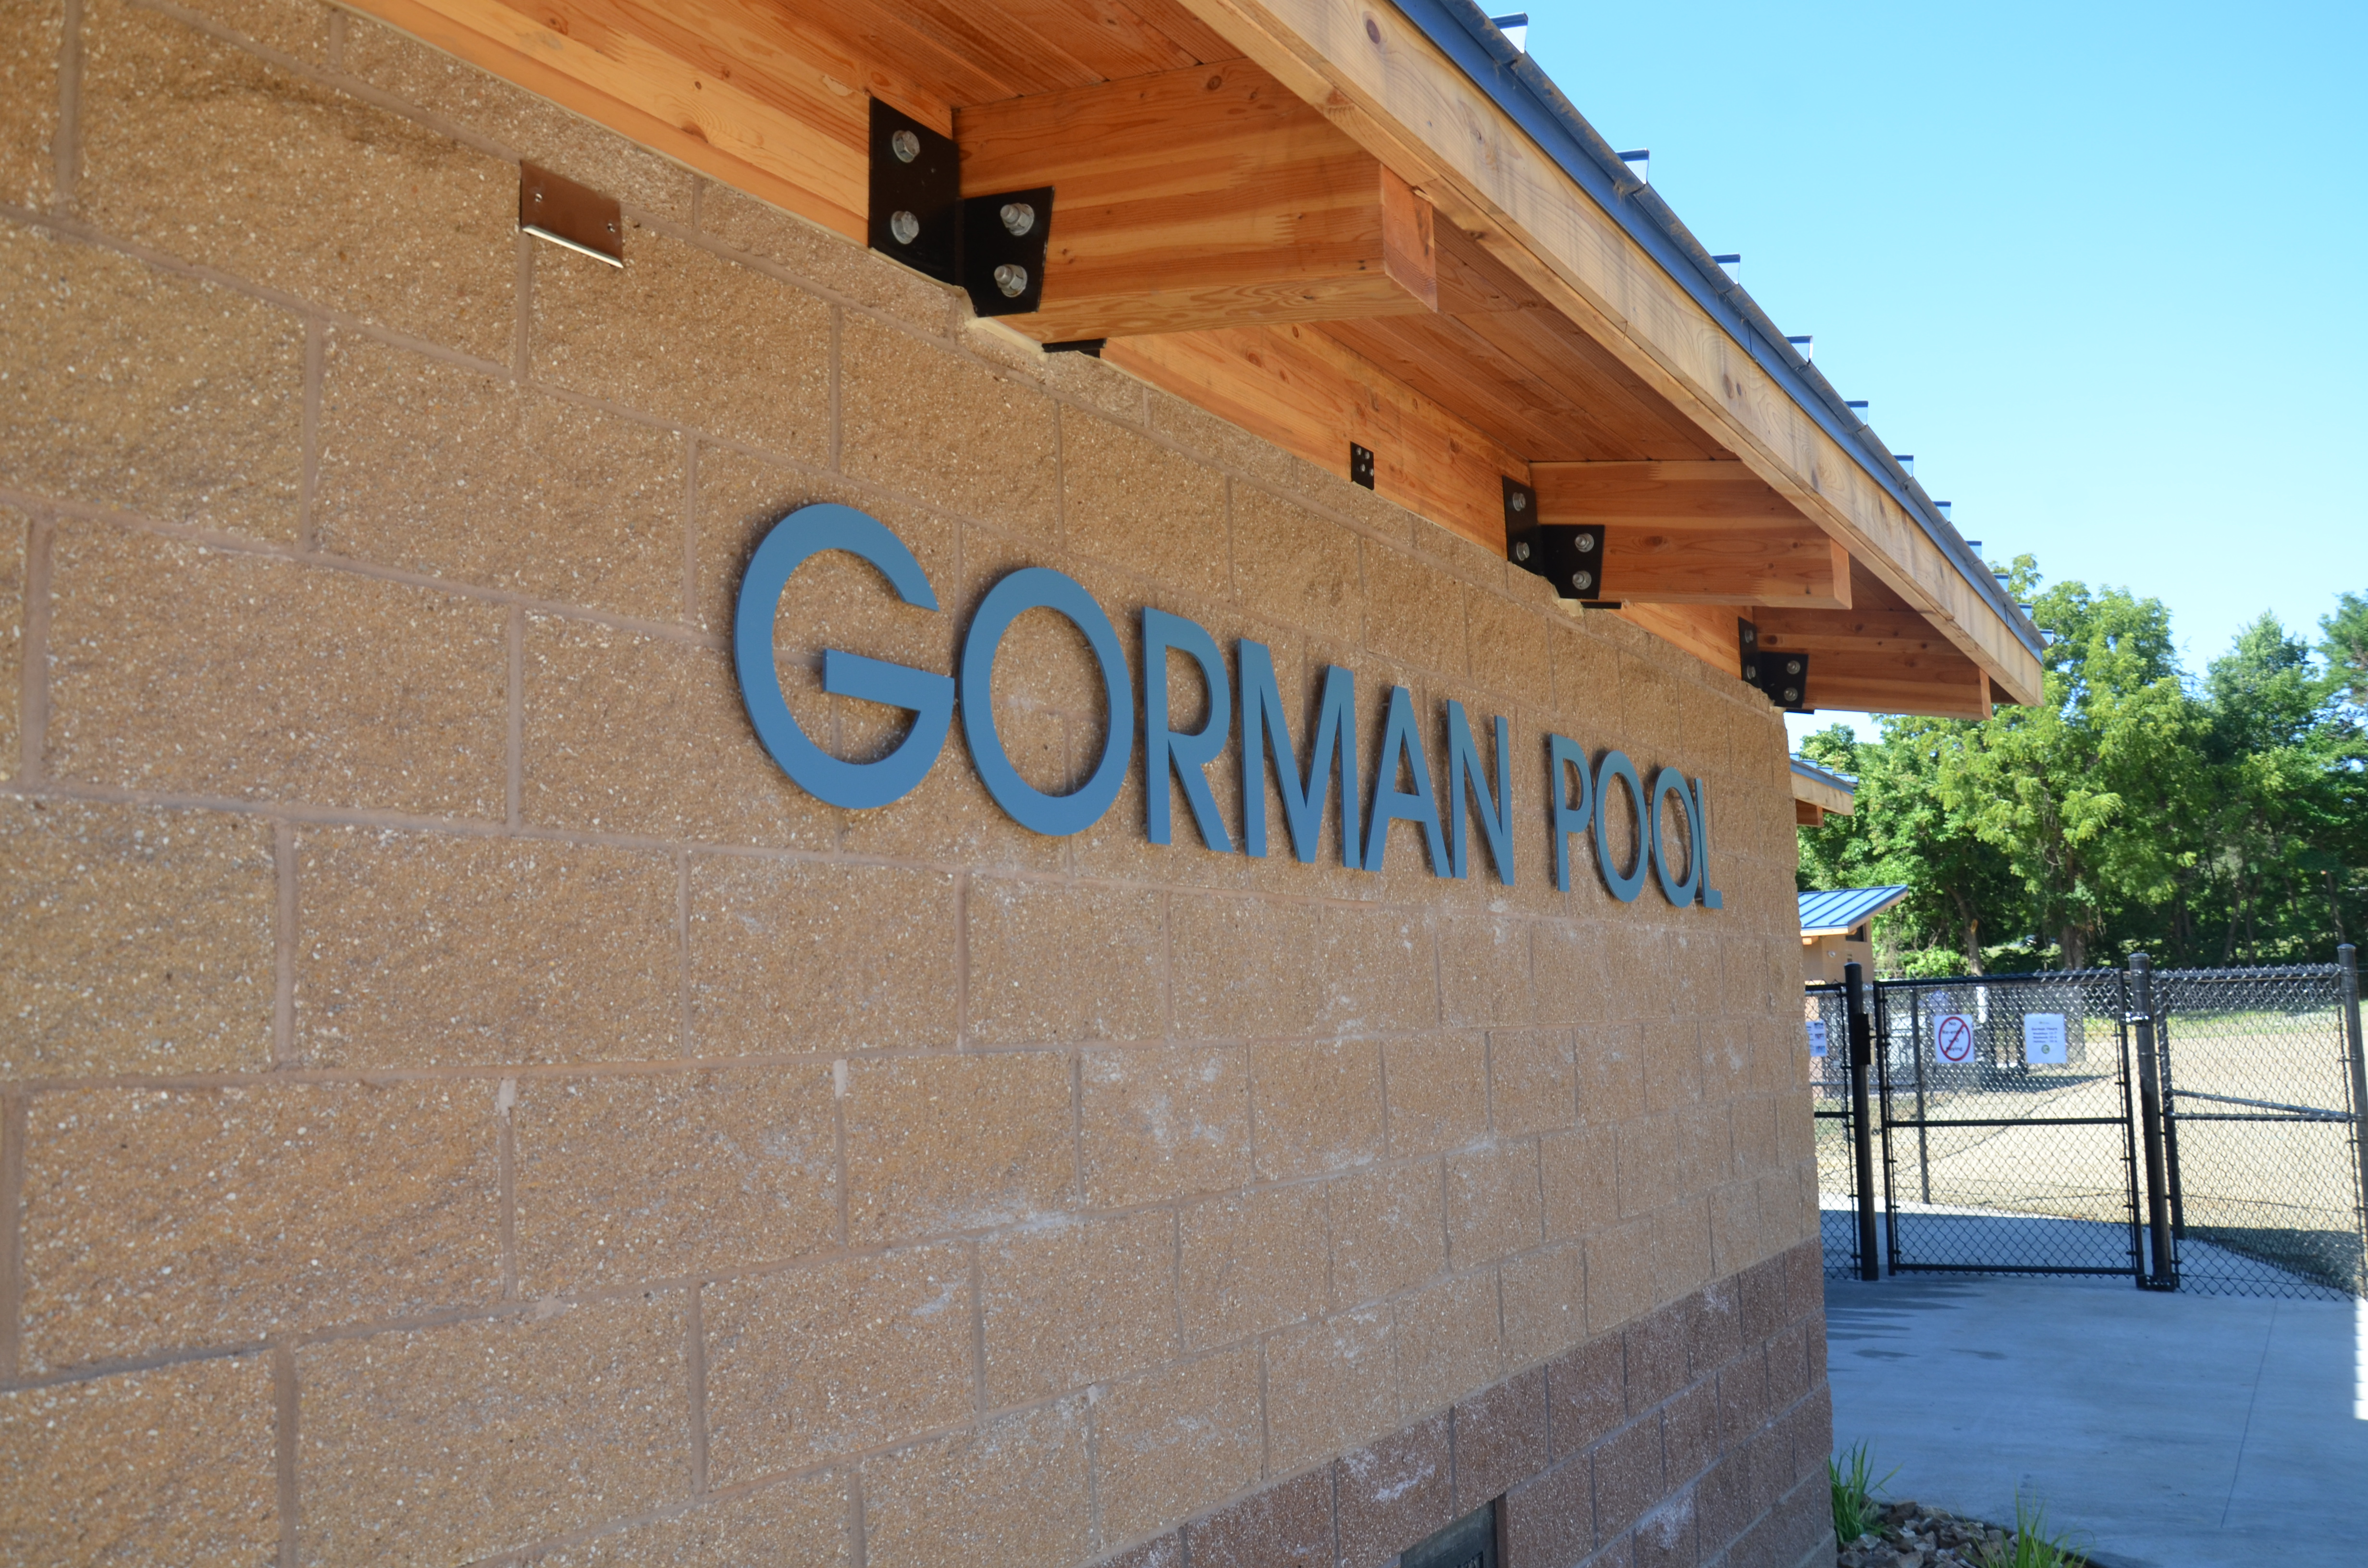 Gorman Pool1